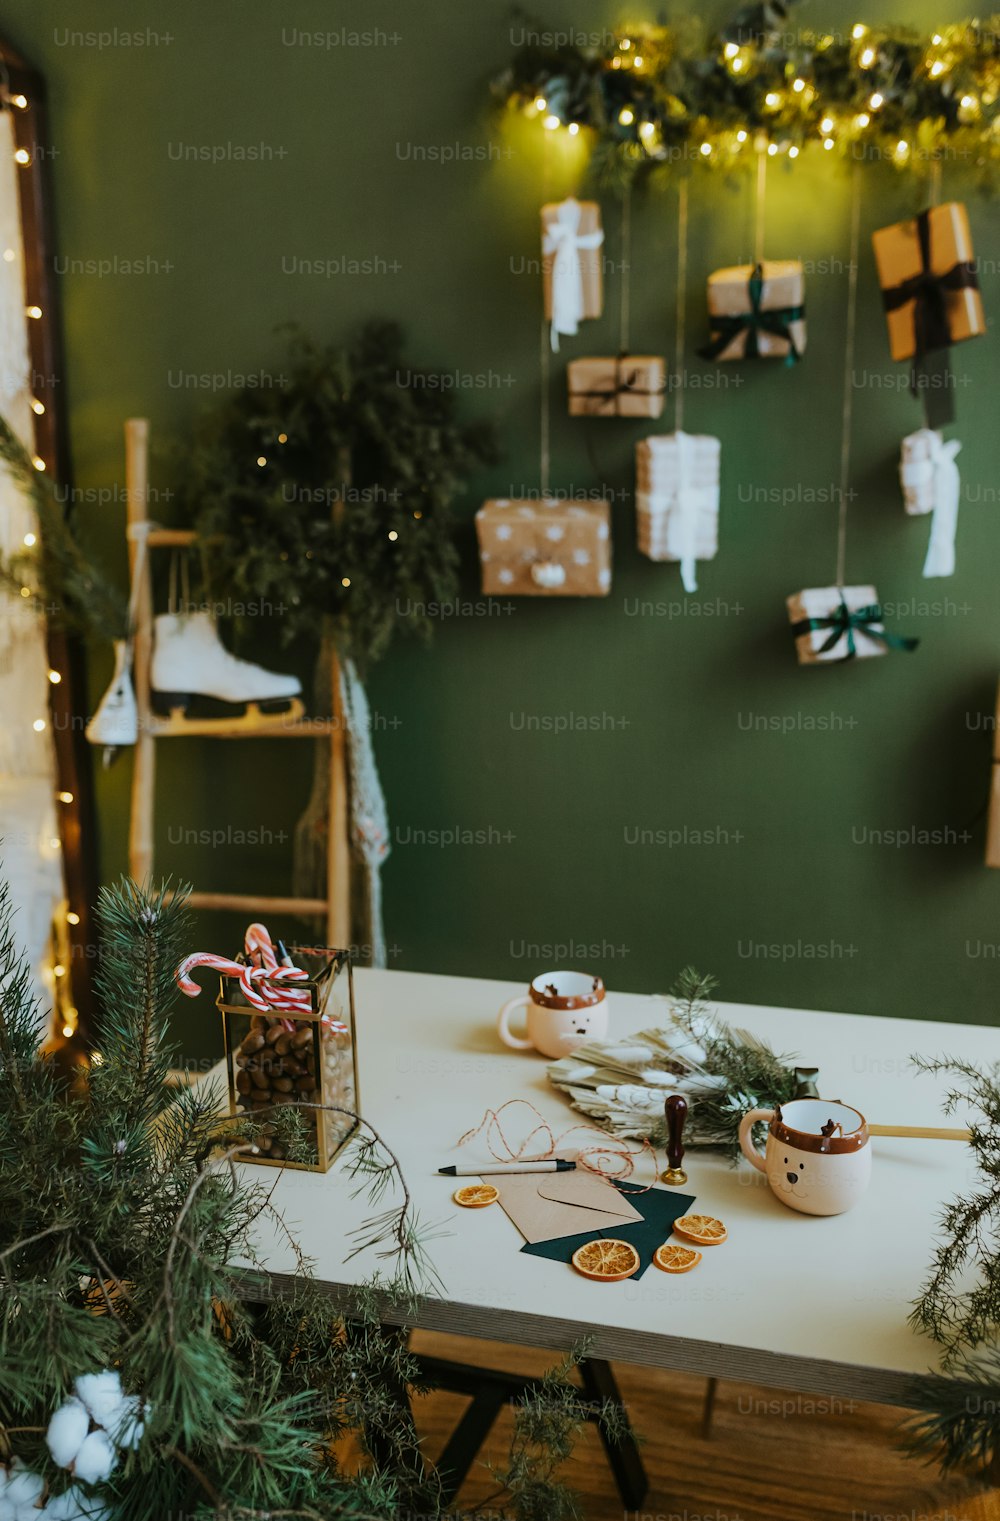 Una tavola bianca sormontata da decorazioni natalizie e regali